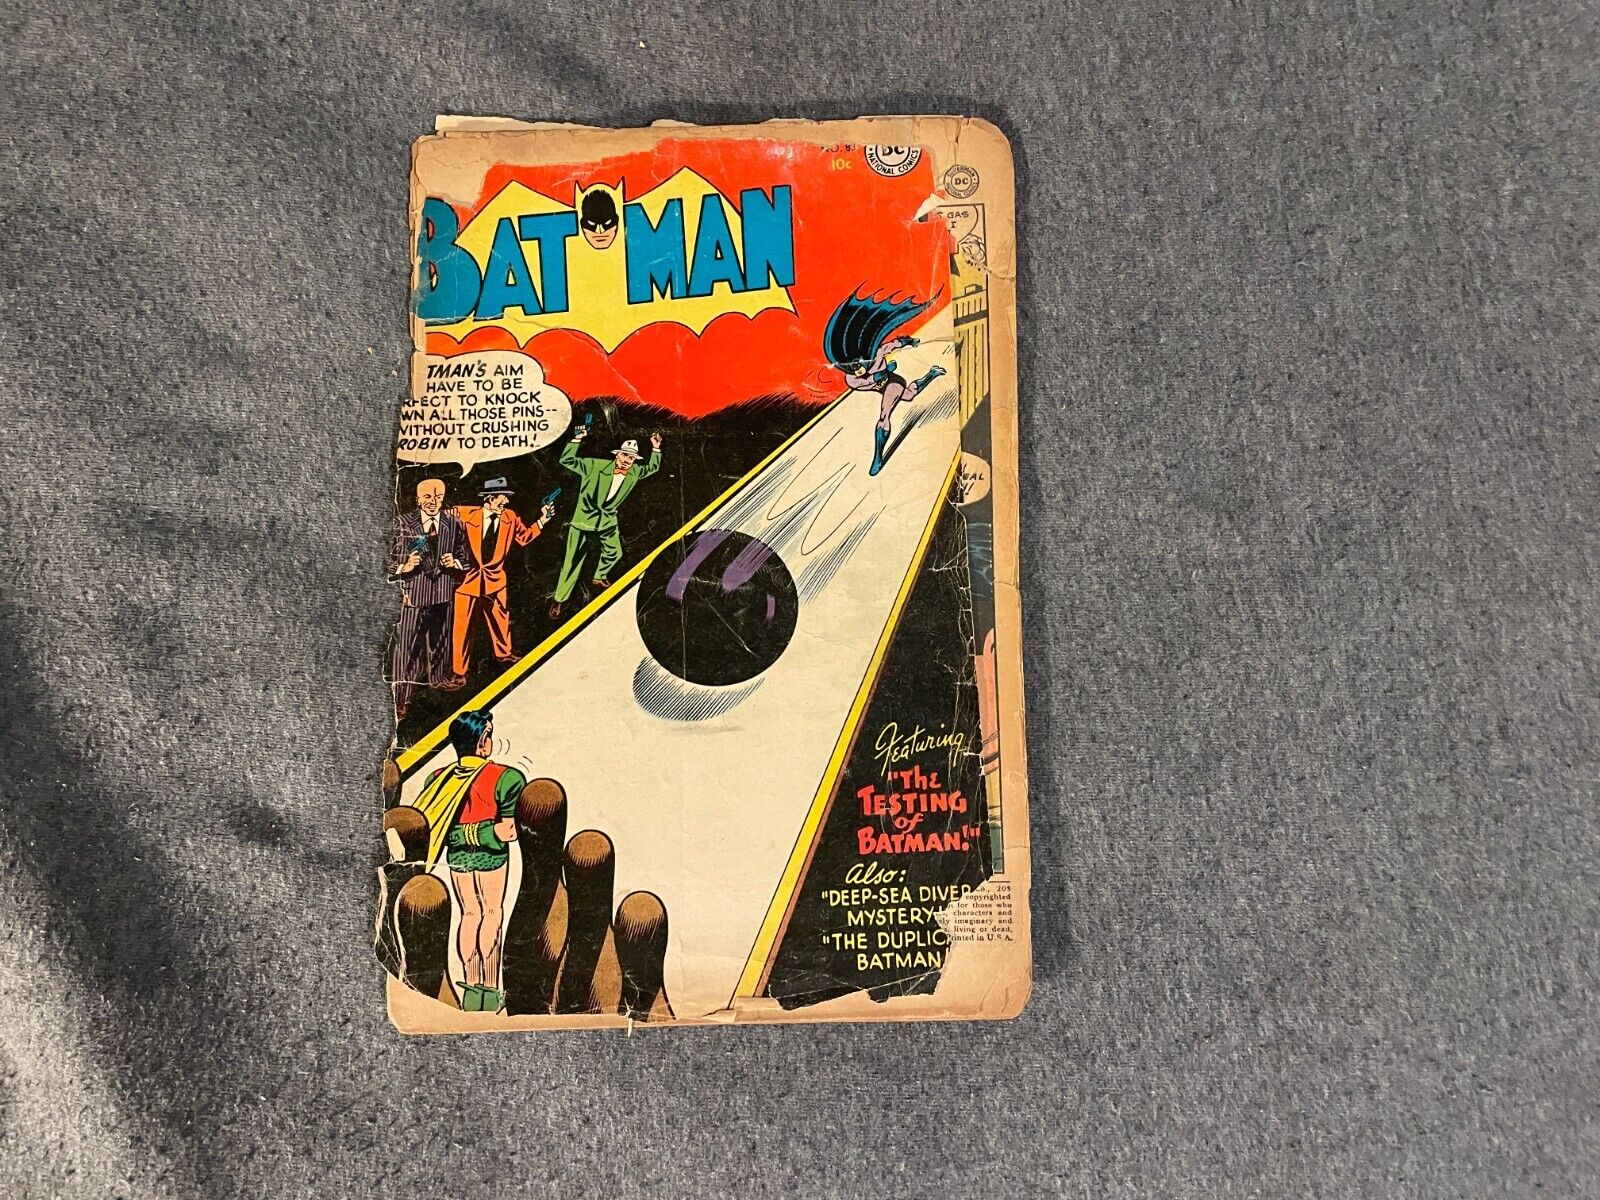 BATMAN #83 April 1954 LOW GRADE Comic Book Vintage Golden Age